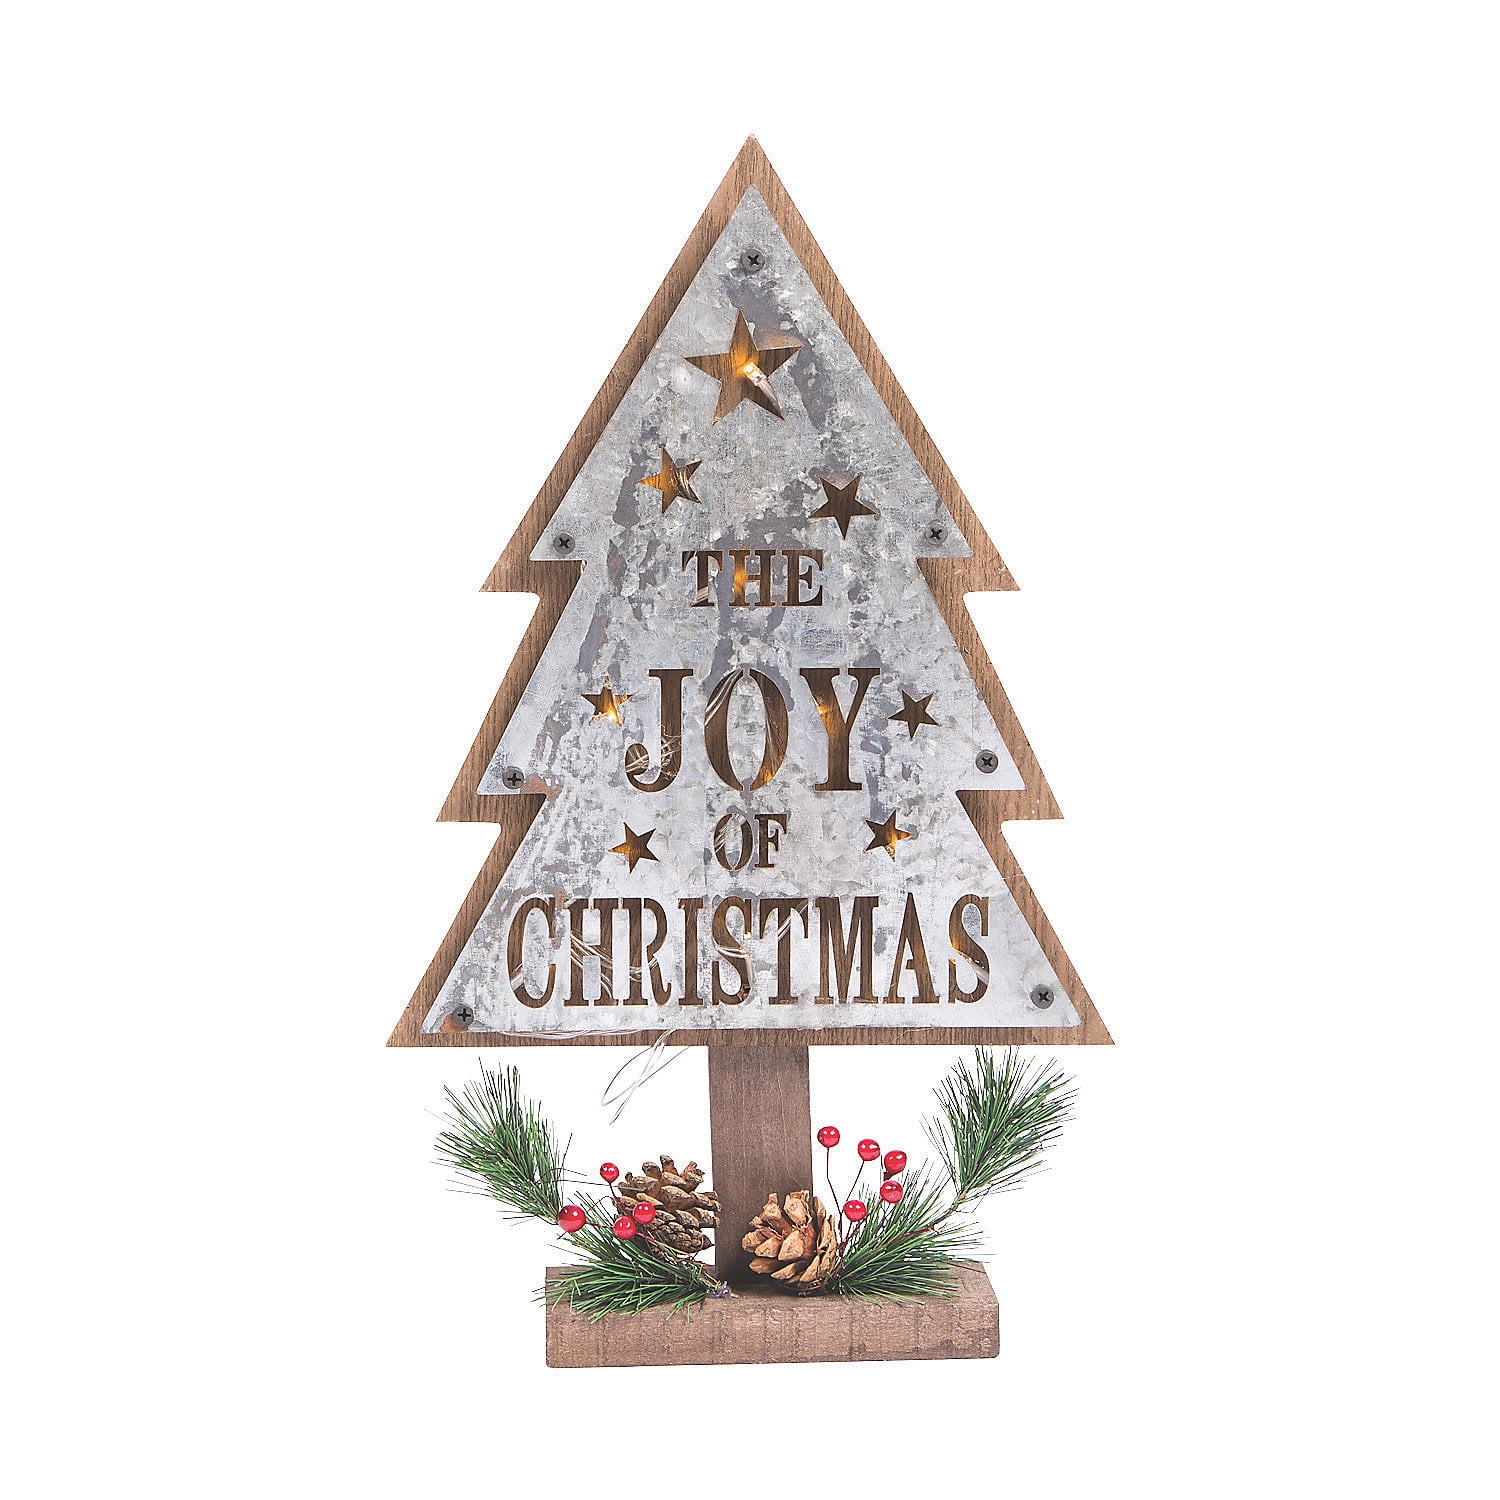 Christmas Tree Light Up Wood Sign - Home Decor - 1 Piece - Walmart.com